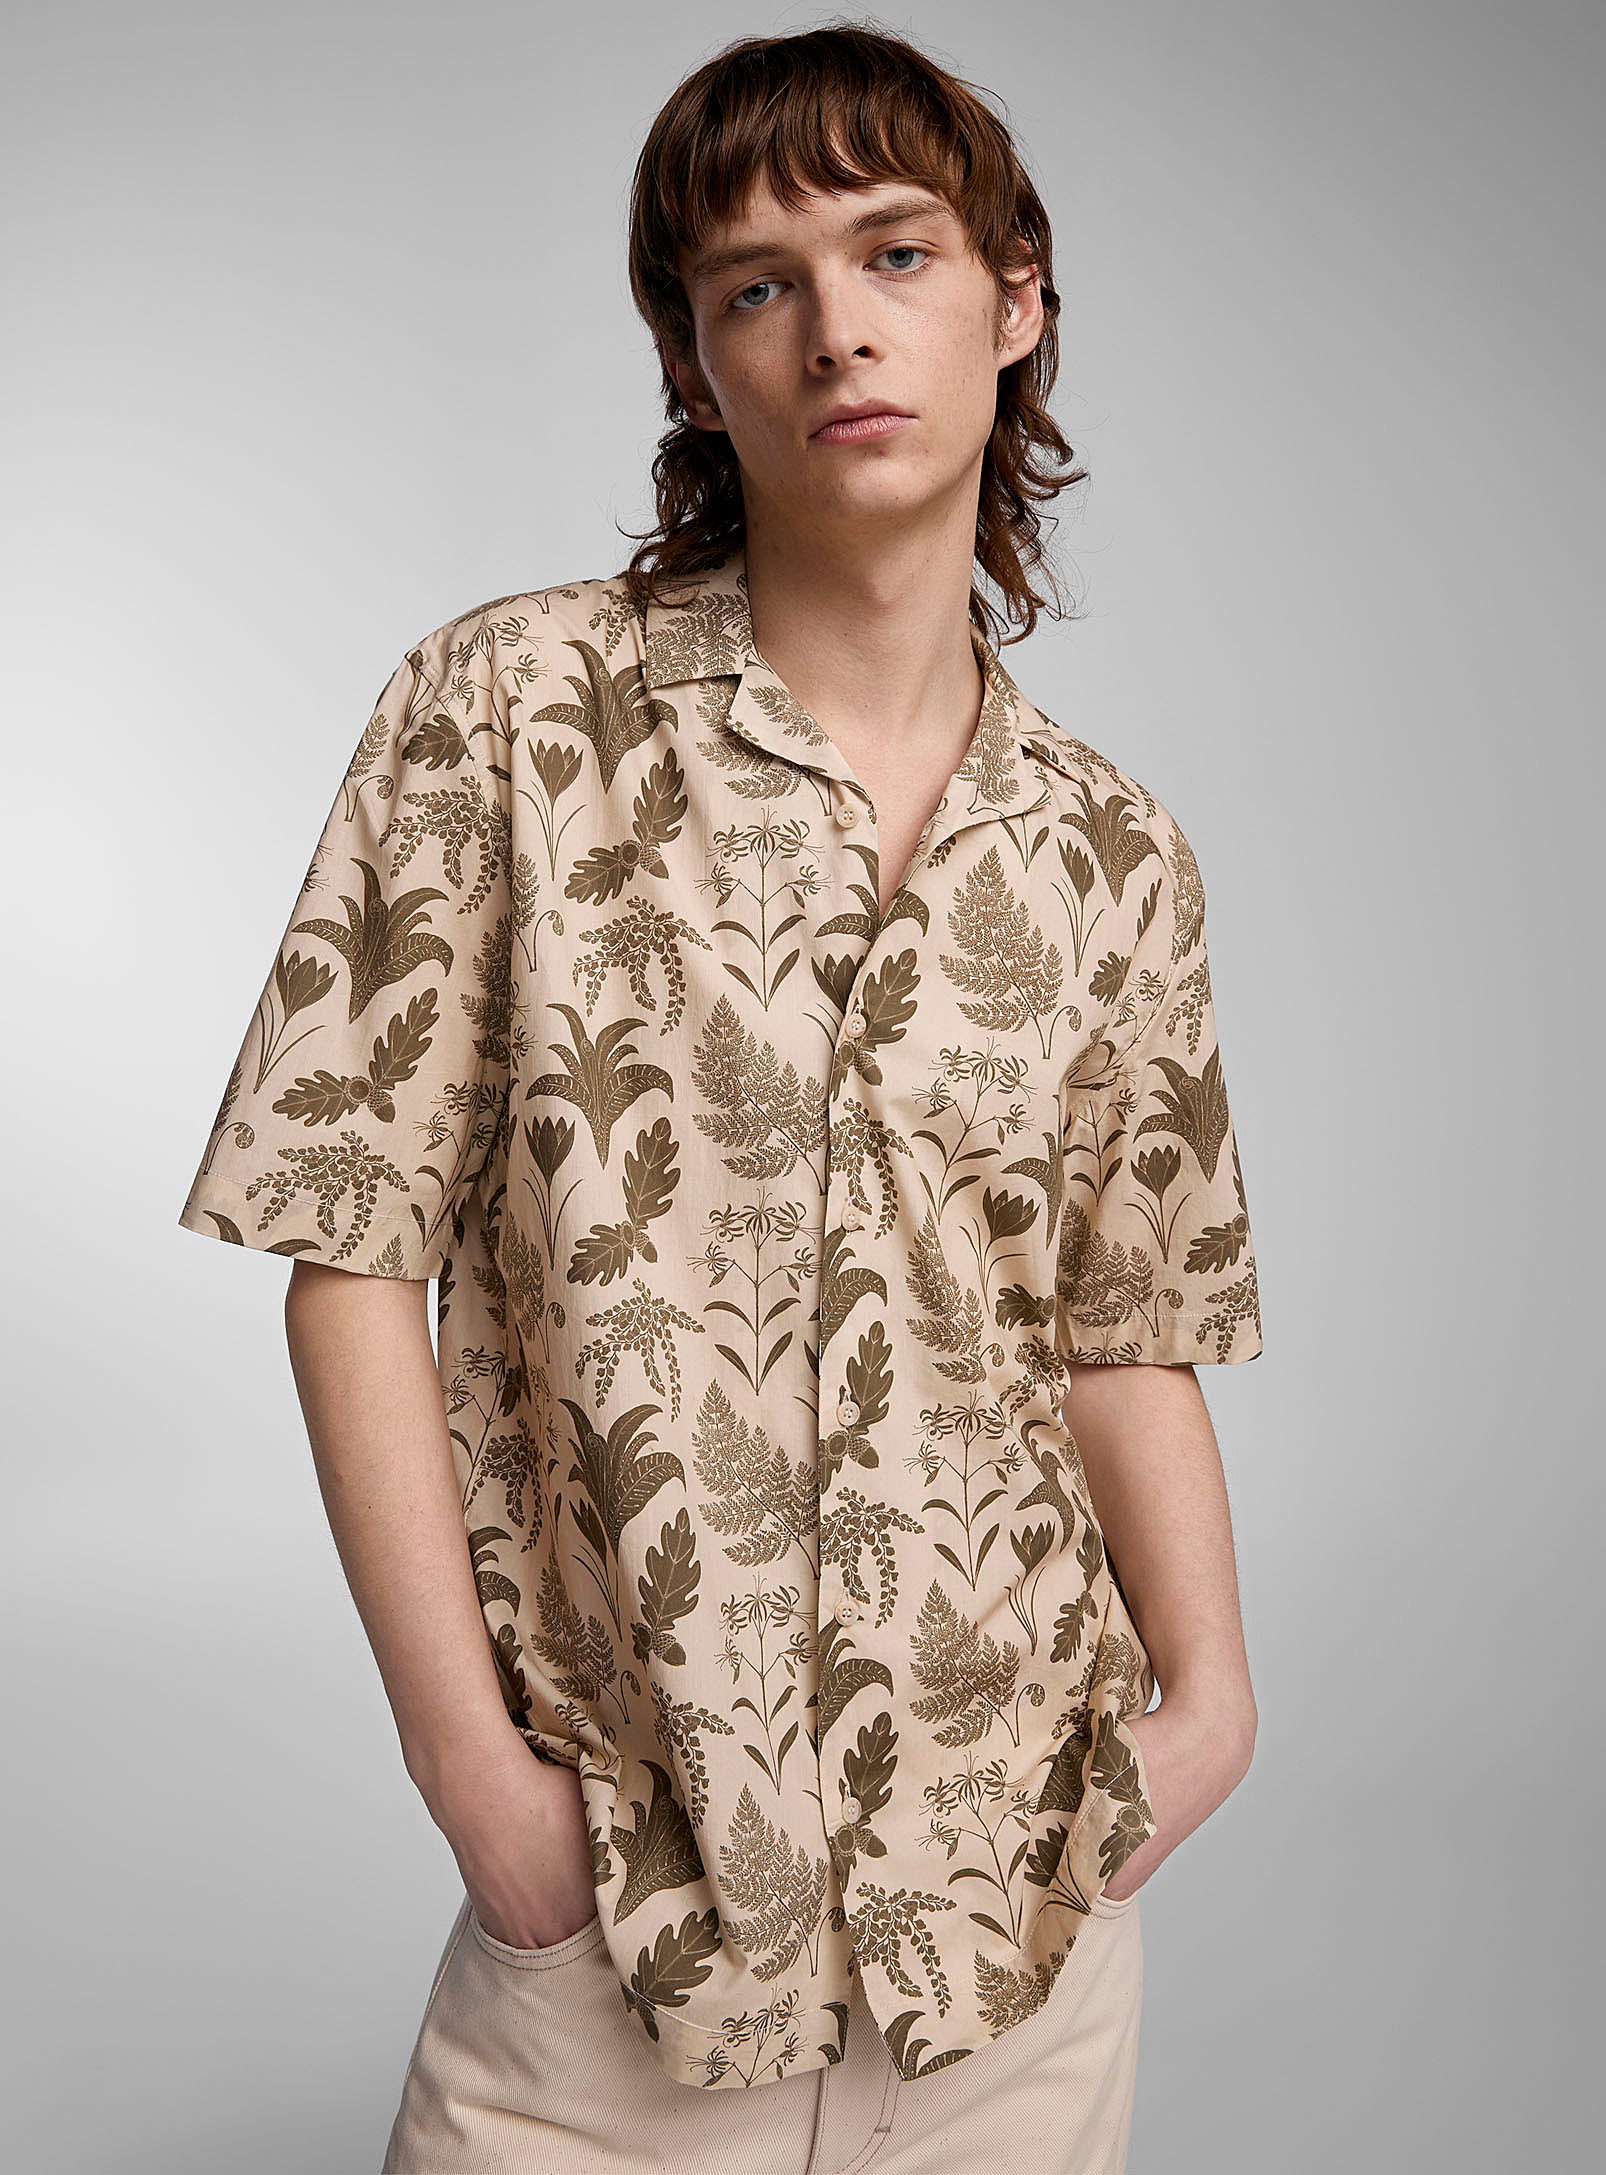 Sunspel - Men's Katie Scott botanical shirt